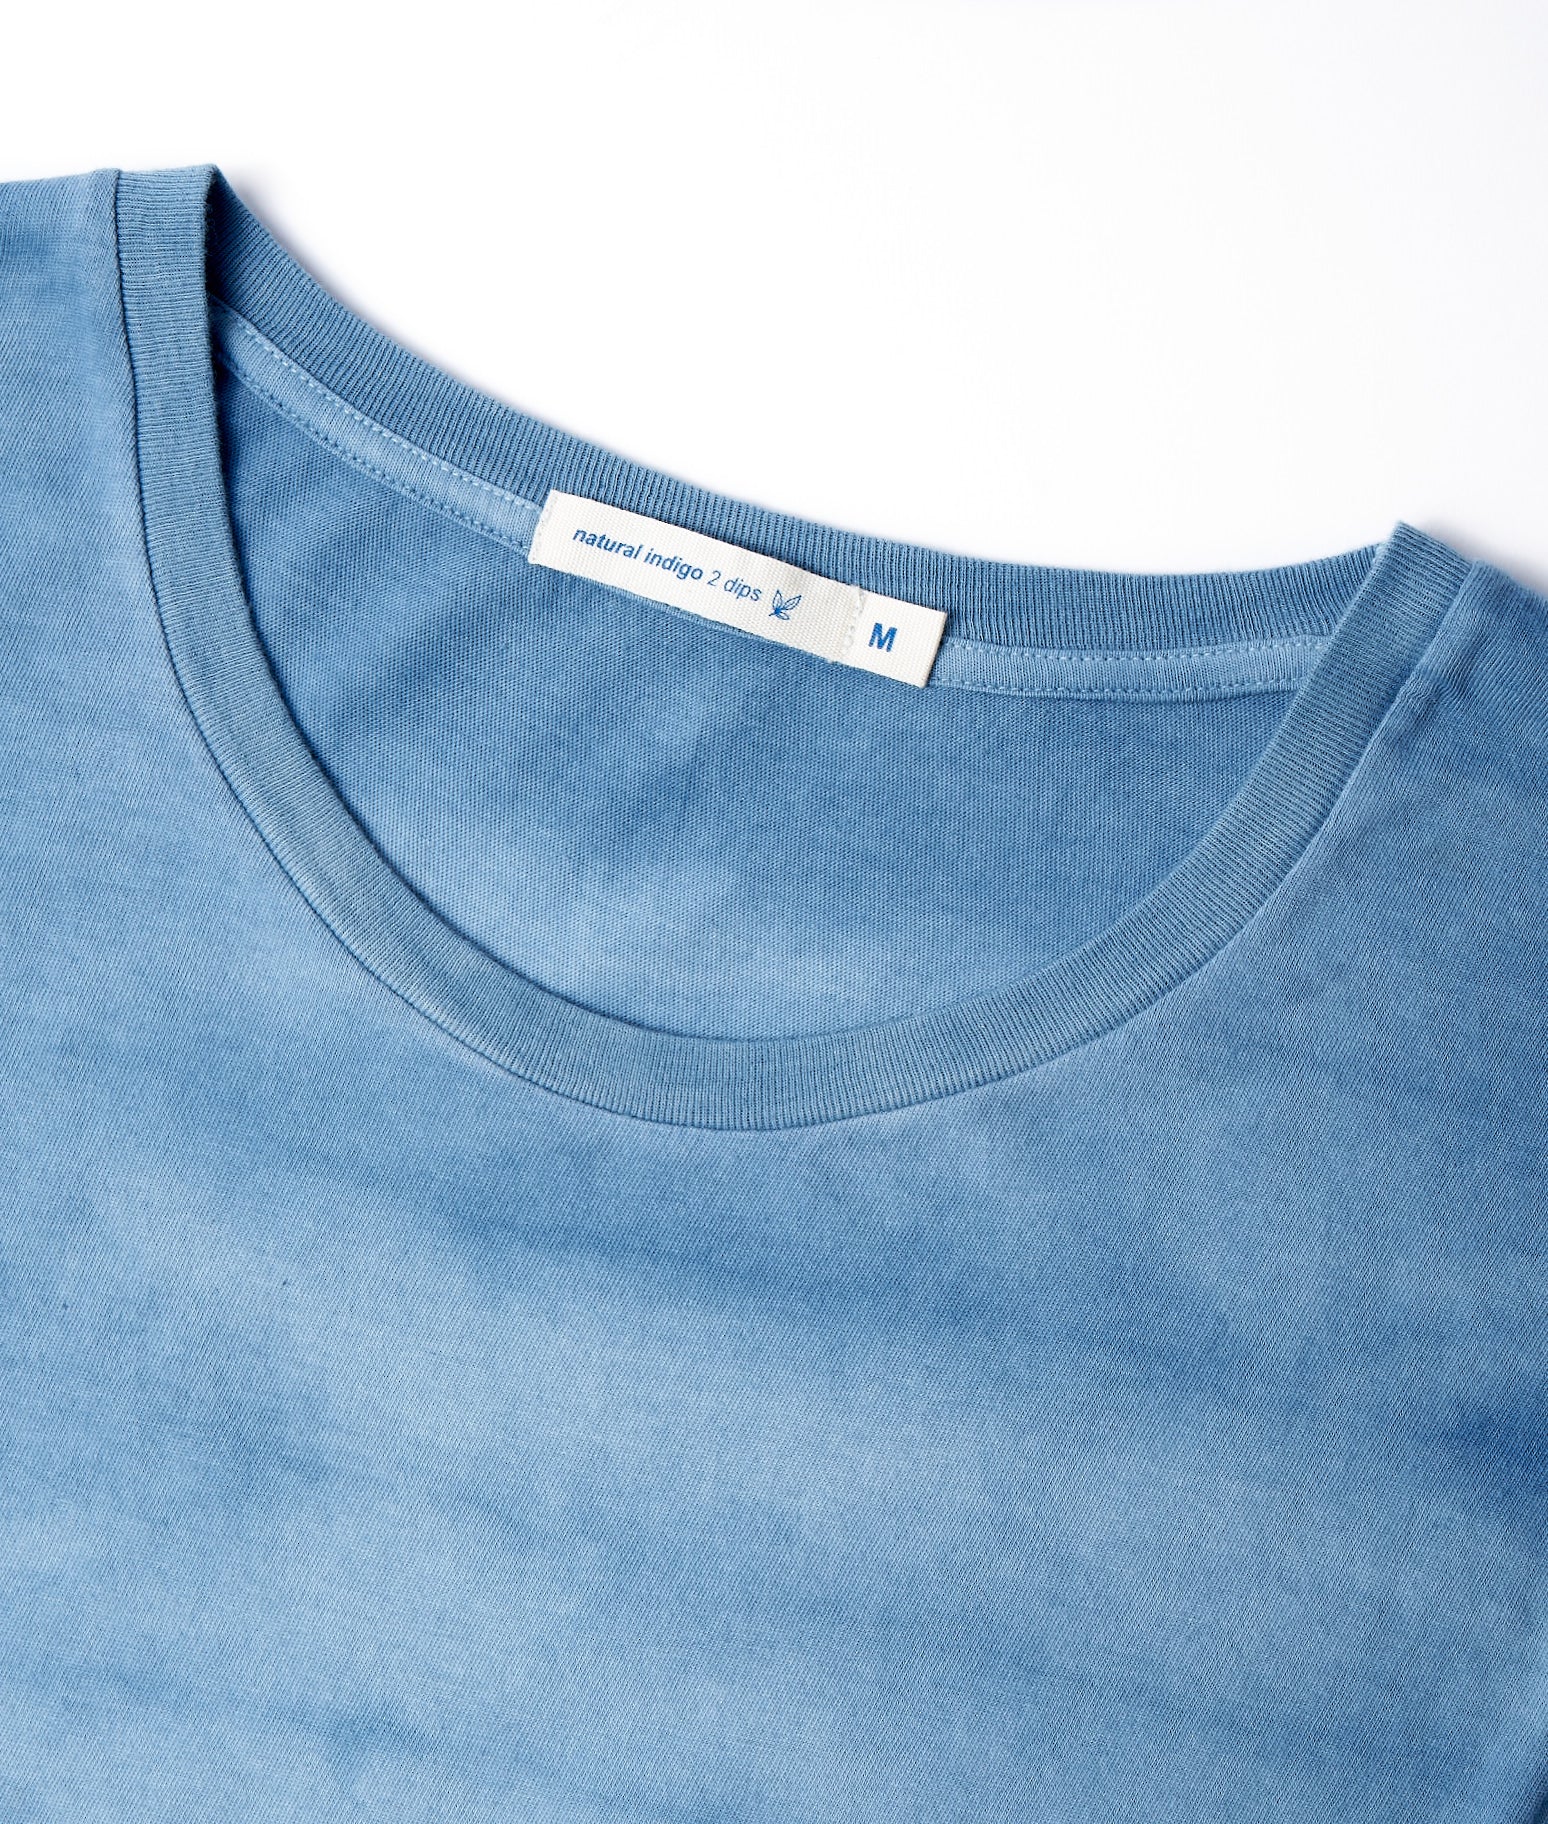 A close up of a blue t - shirt.